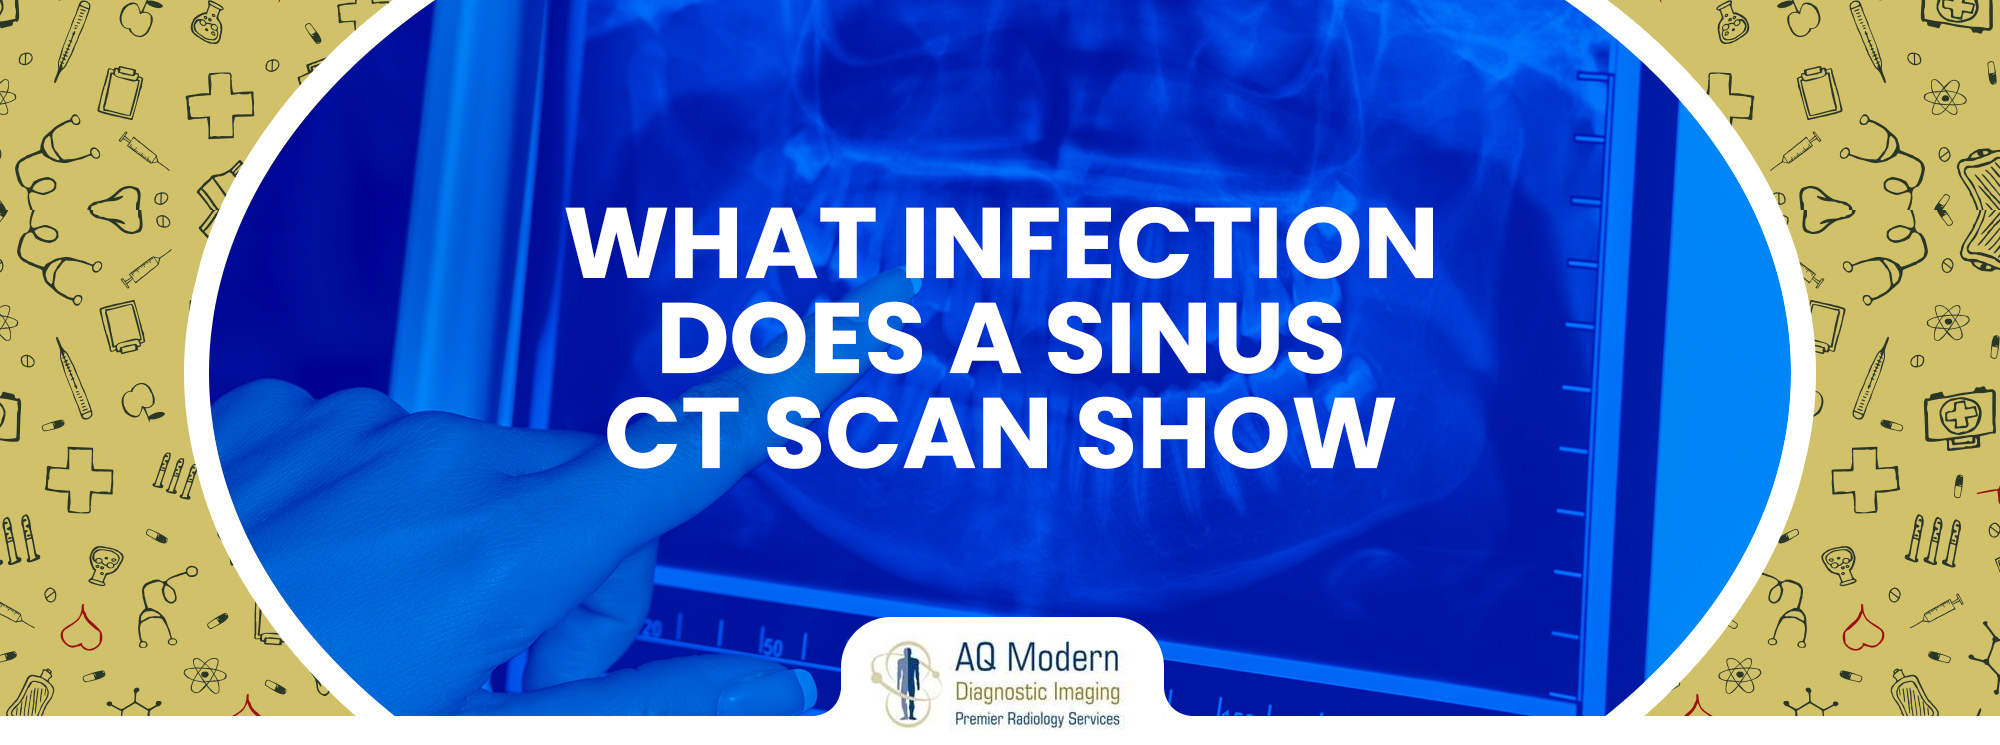 sinus ct scan